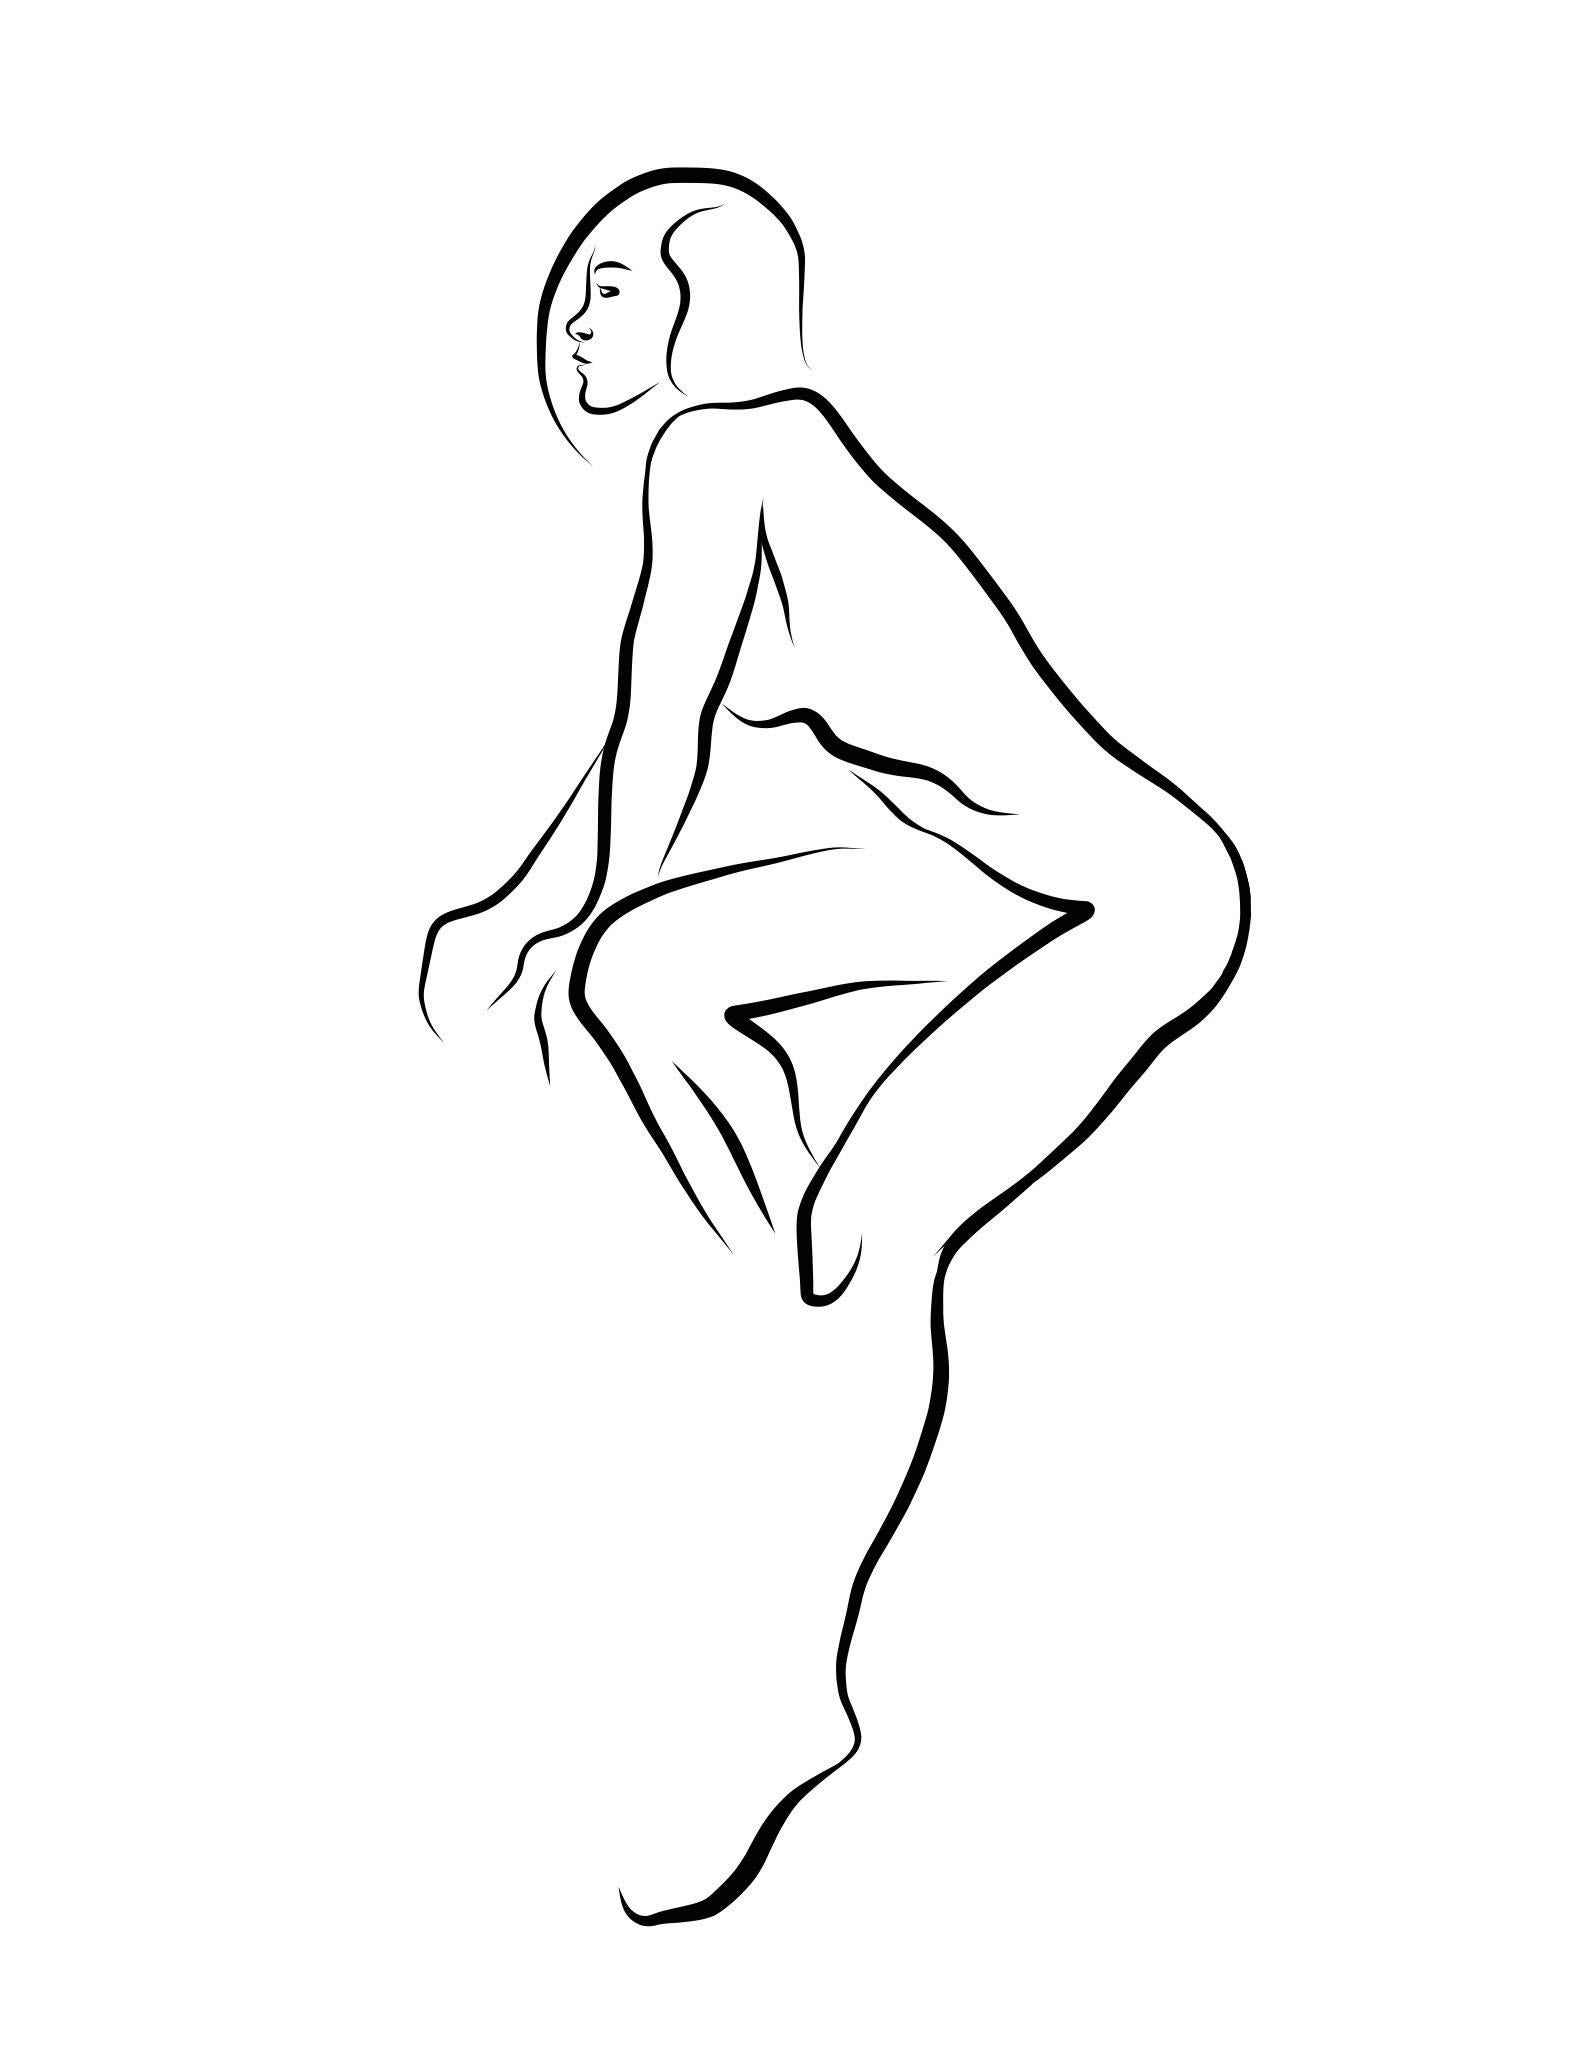 Haiku #46, 1/50 - Digital Vector Drawing Seated Female Nude Woman Figure Short H - Art by Michael Binkley